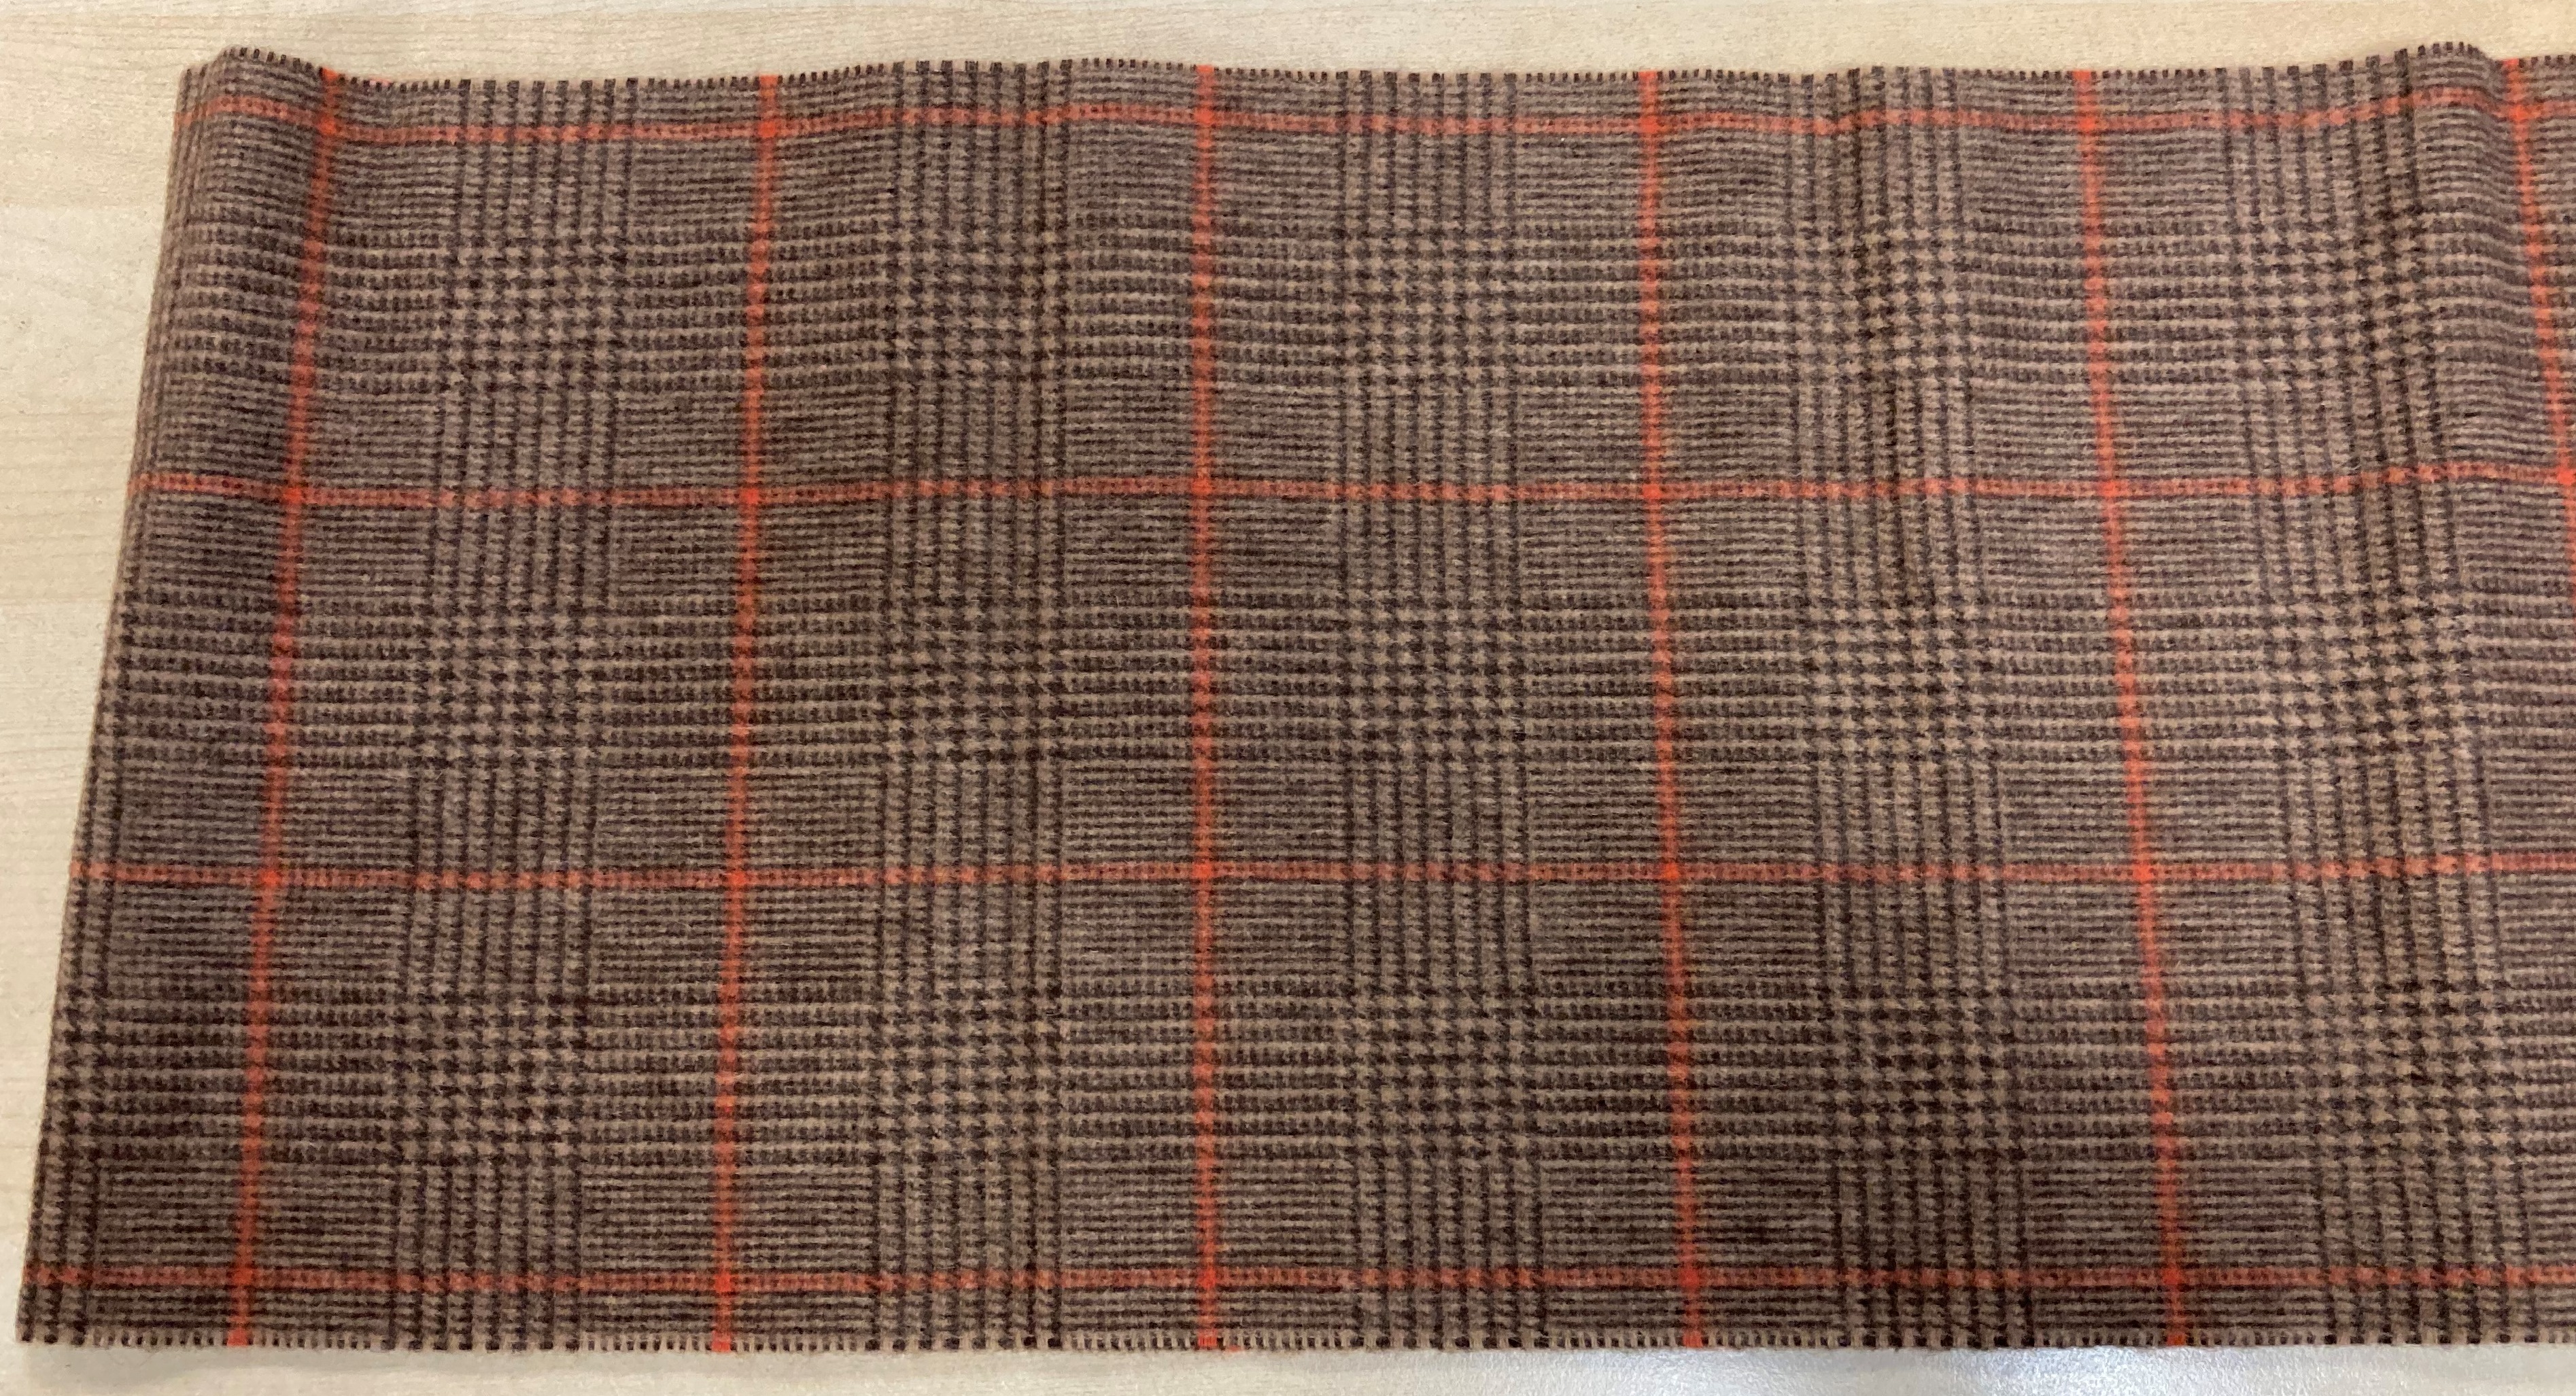 New & Lingwood tartan scarf in original packaging (saleroom location: U10) - Image 3 of 3